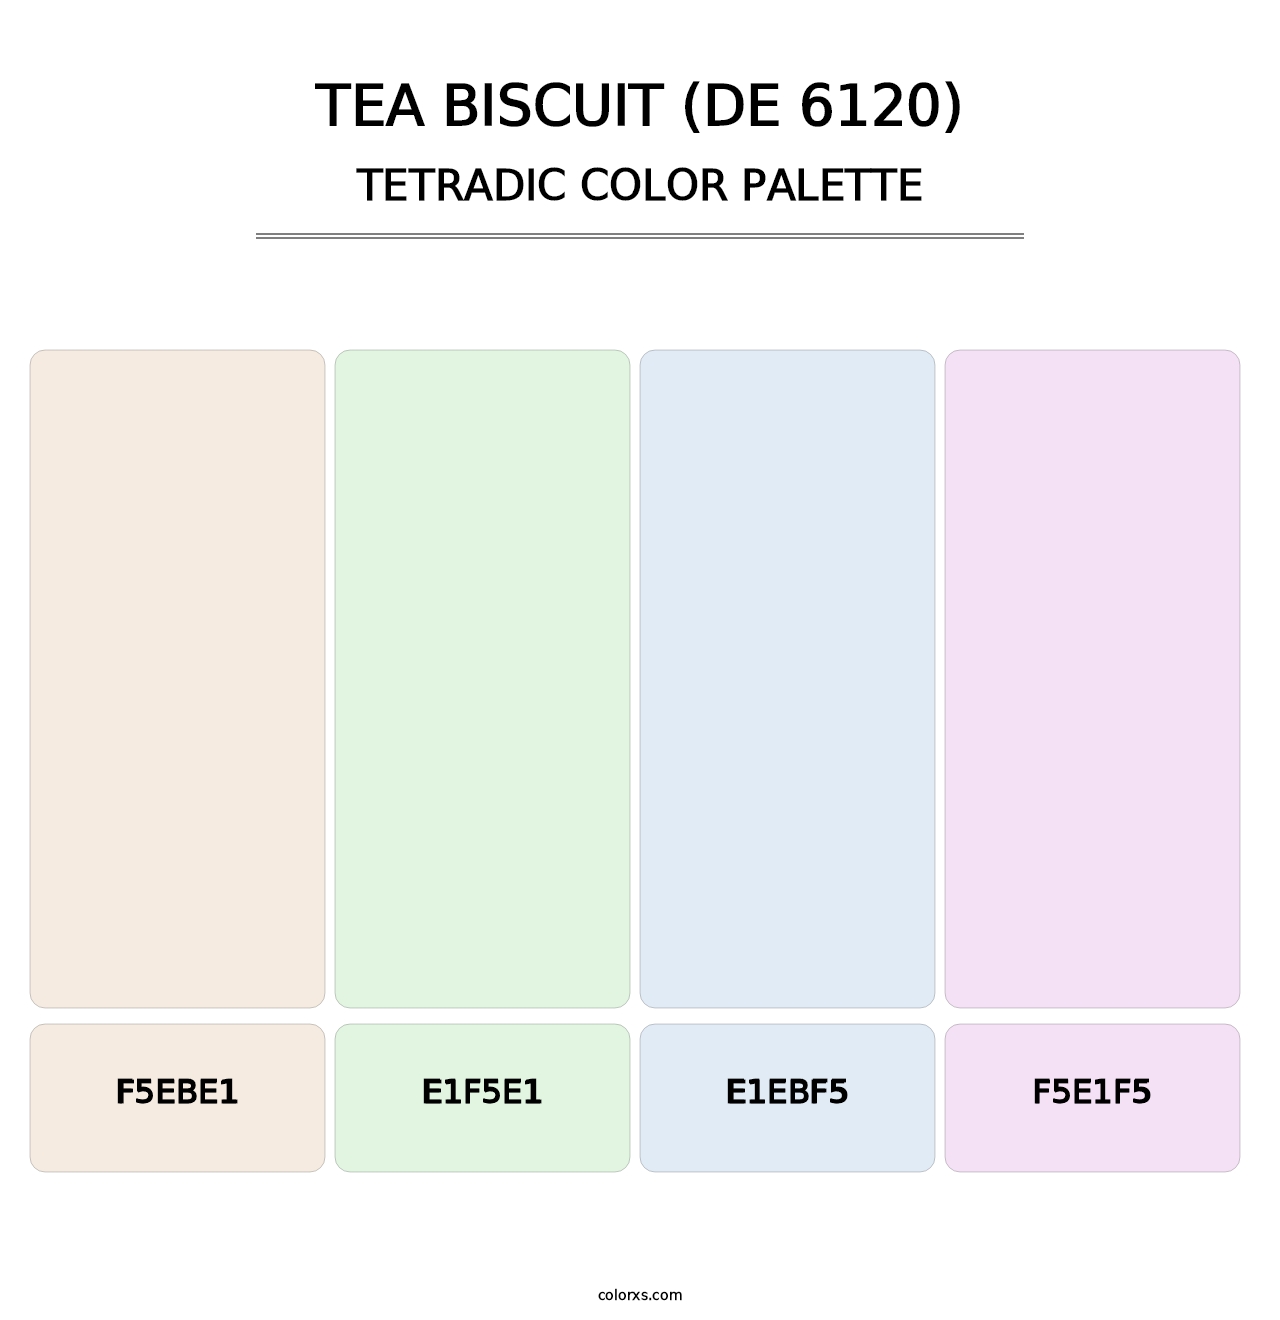 Tea Biscuit (DE 6120) - Tetradic Color Palette